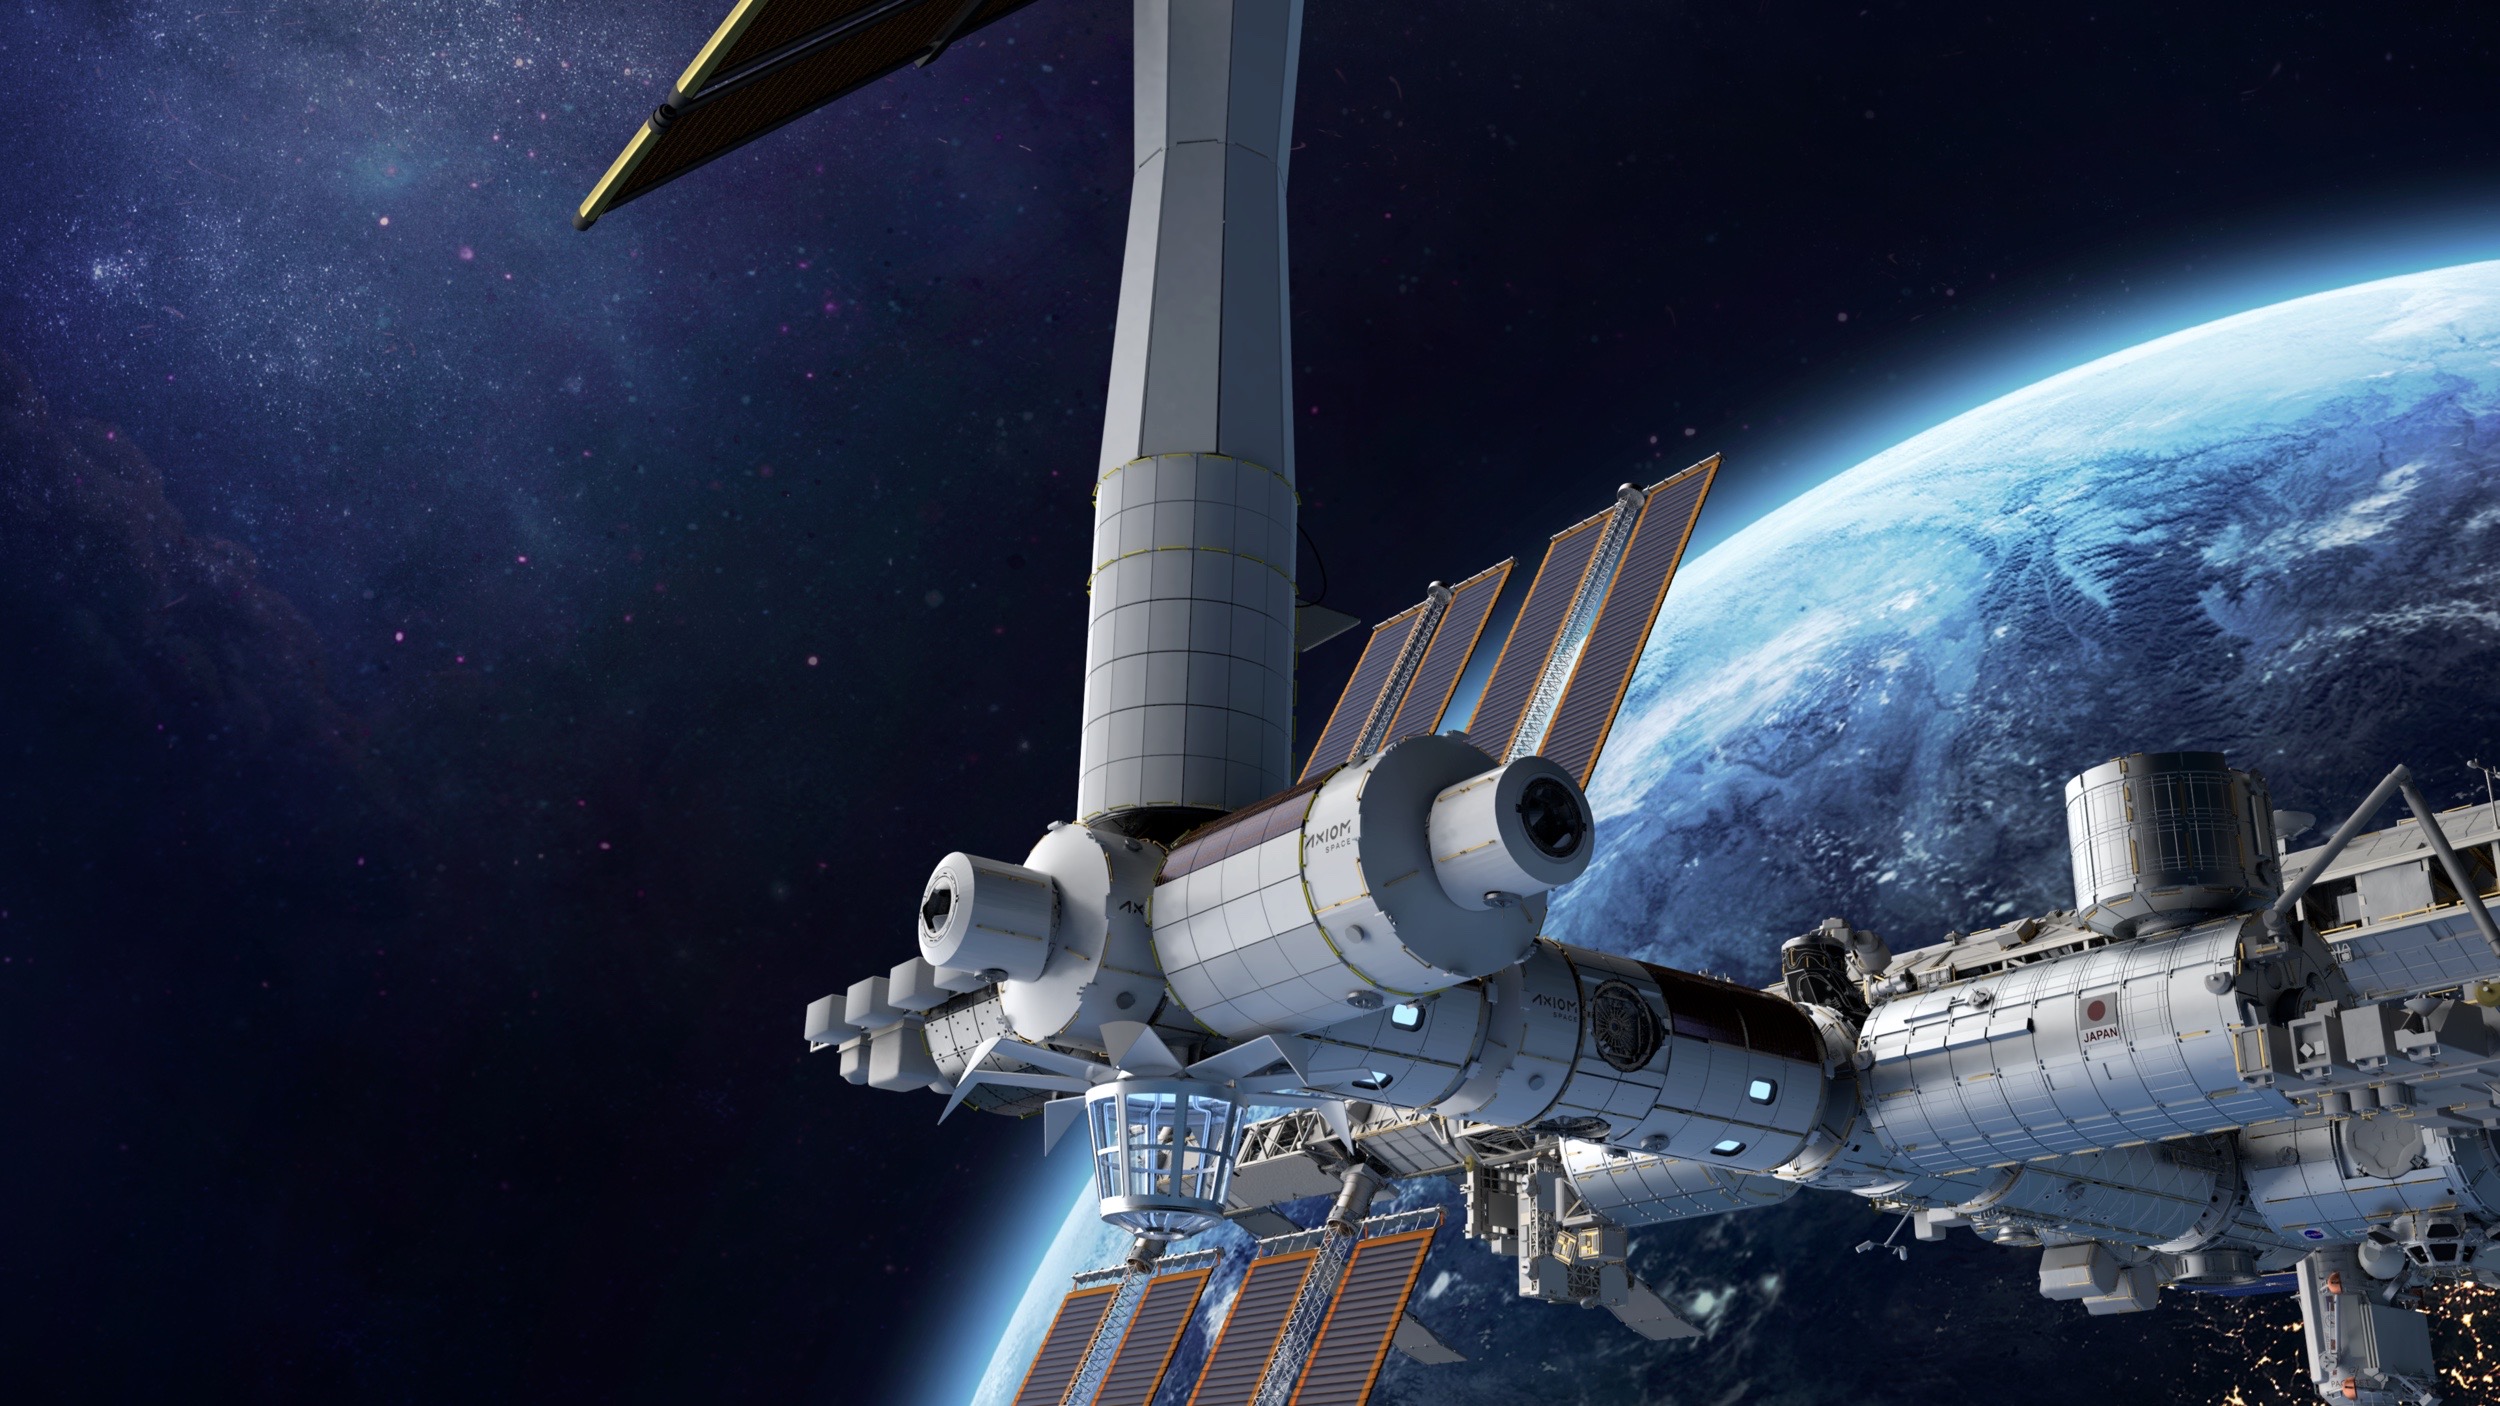 رسم توضيحي لفنان لمحطة الفضاء التي تخطط شركة Axiom Space ومقرها هيوستن لبنائها في مدار حول الأرض.